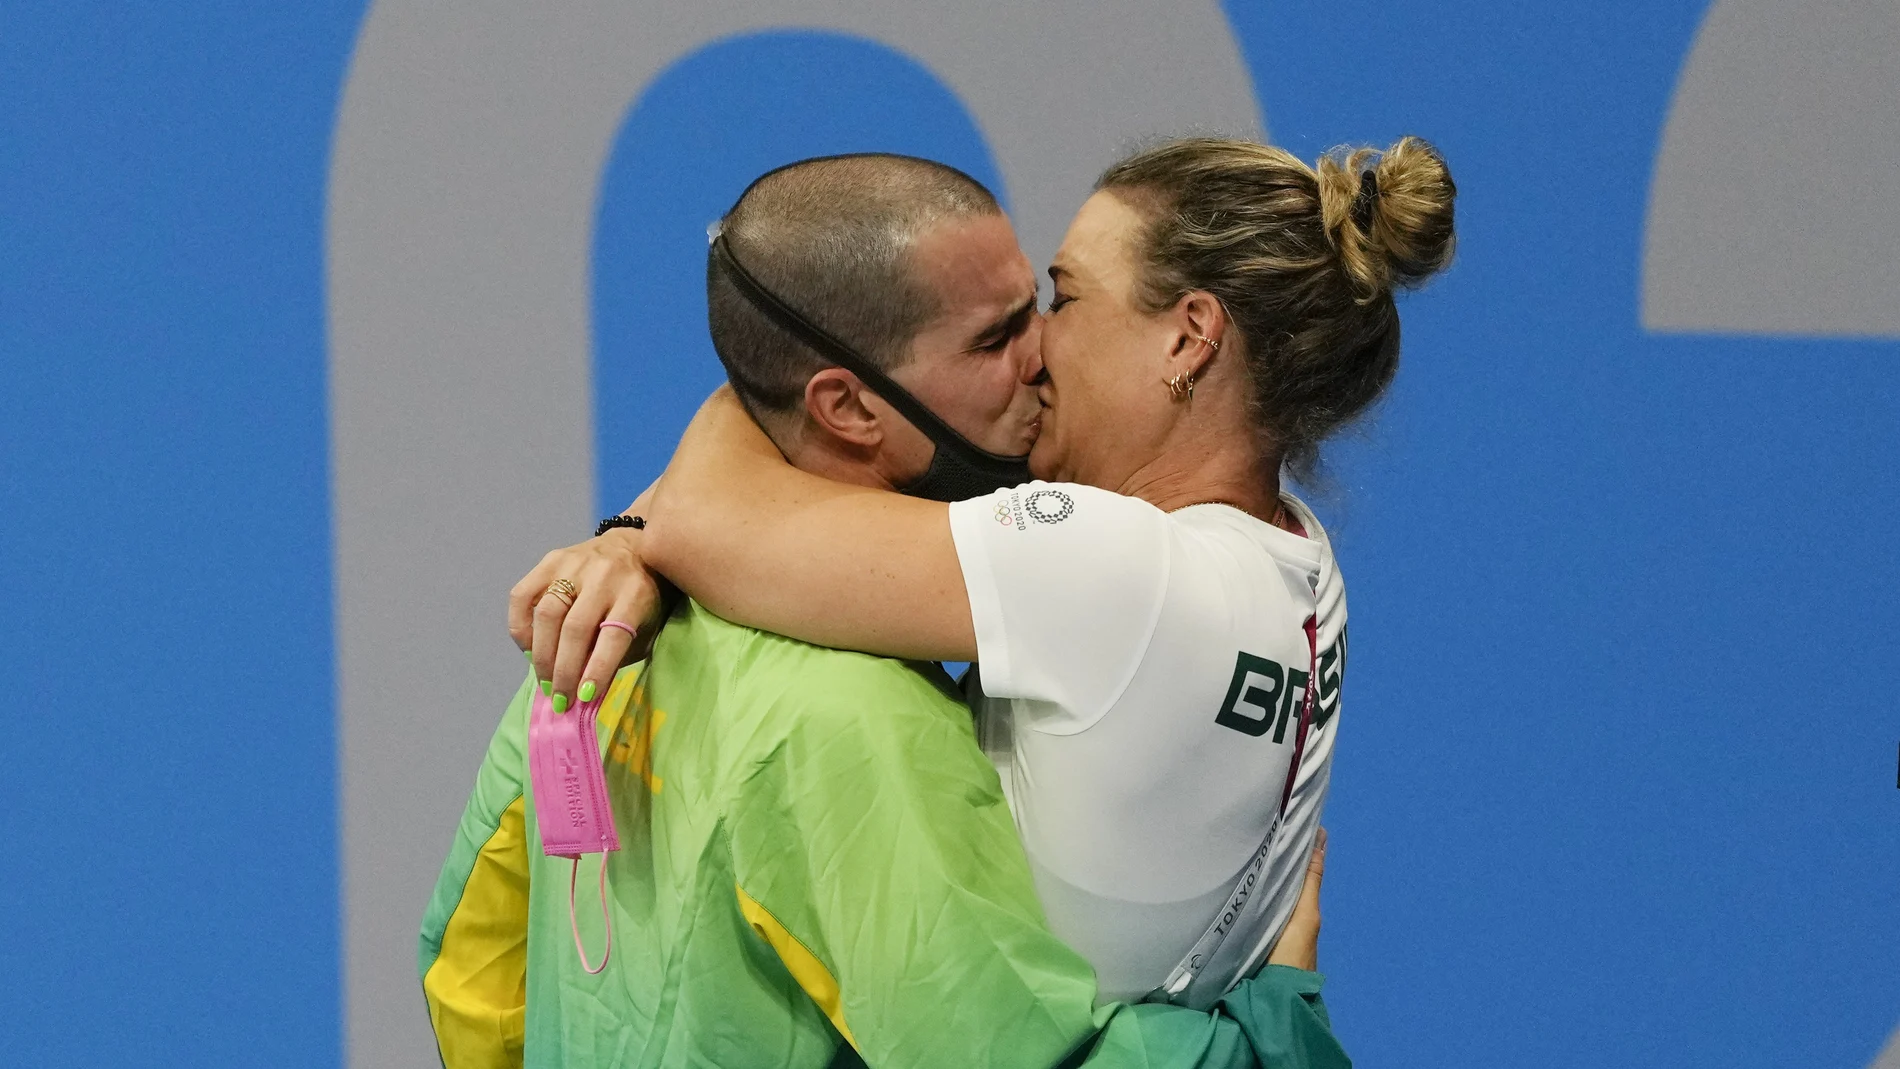 Bruno Fratus besa a la entrenadora Michelle Lenhardt para celebrar su medalla de bronce en Tokio 2020